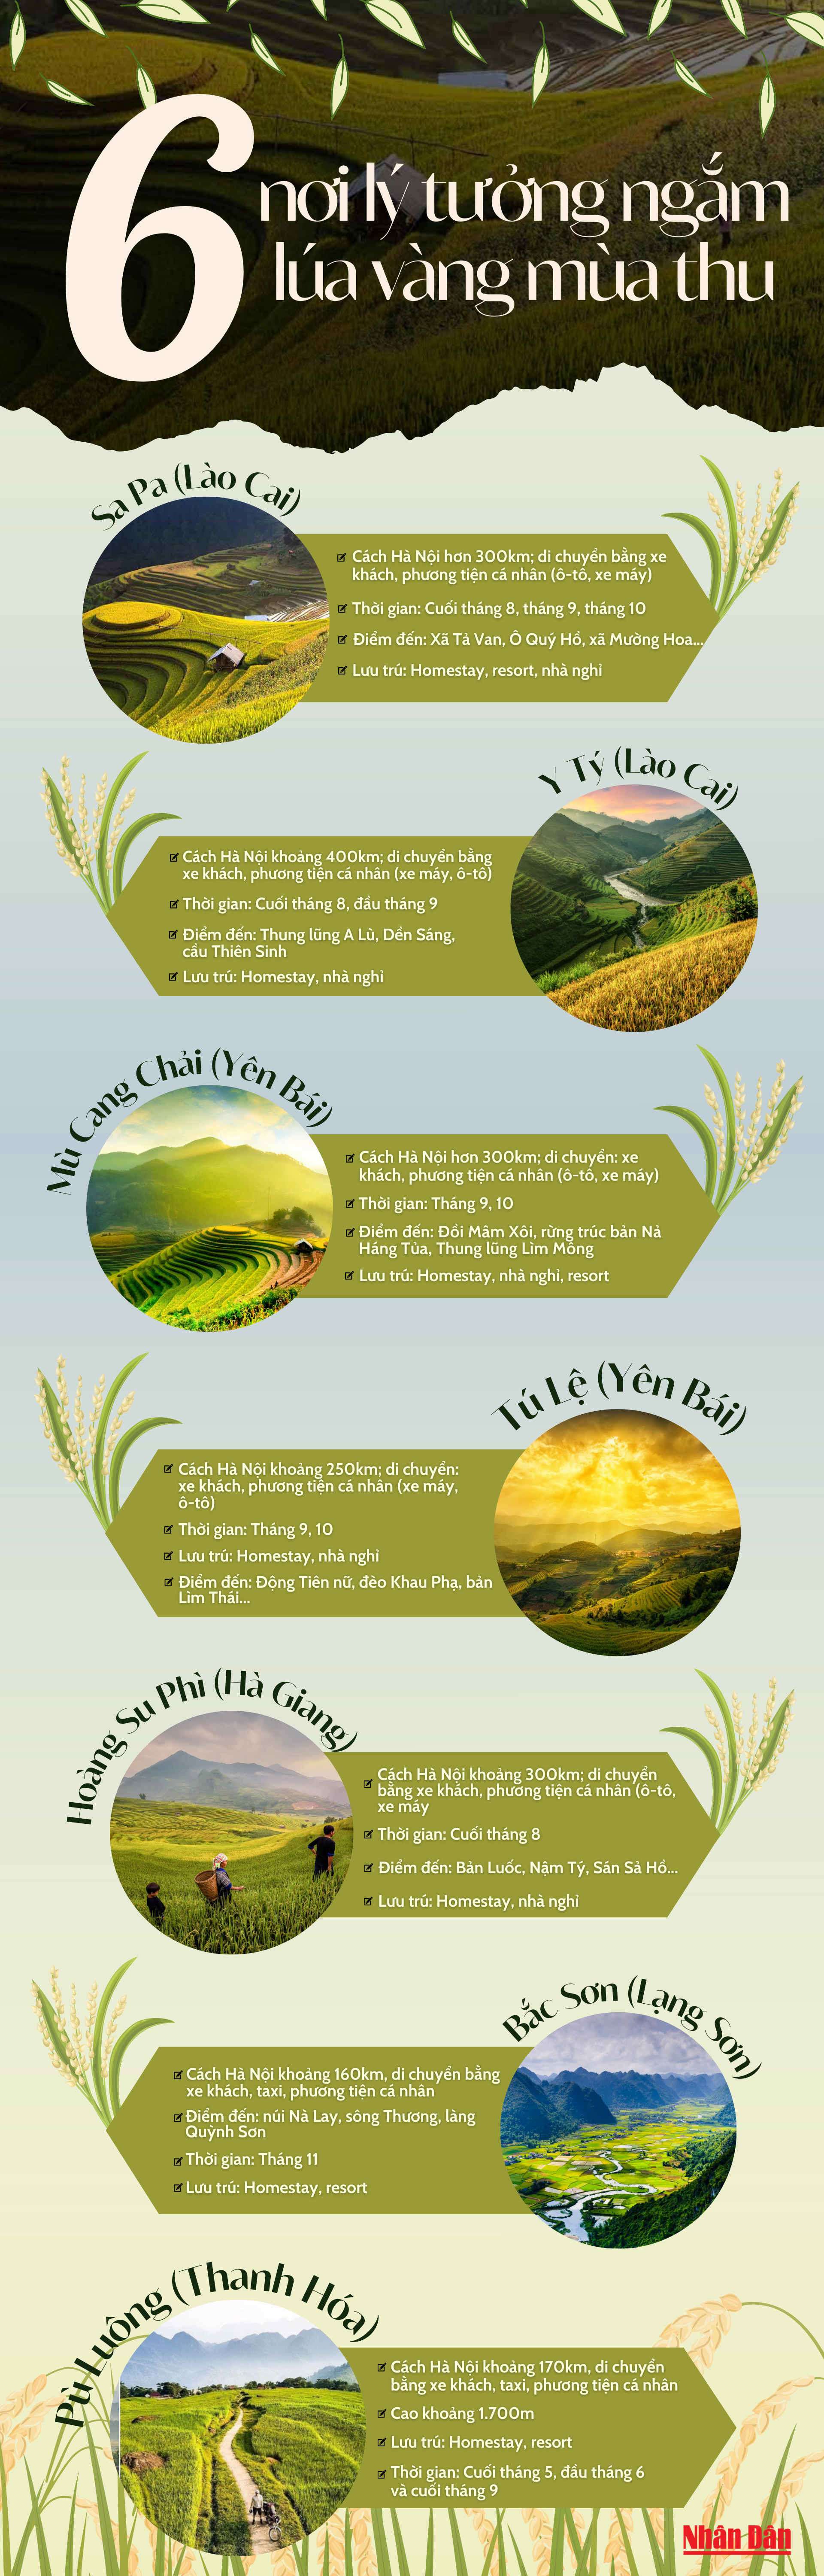 [Infographic] 6 nơi lý tưởng ngắm lúa vàng mùa thu ảnh 1